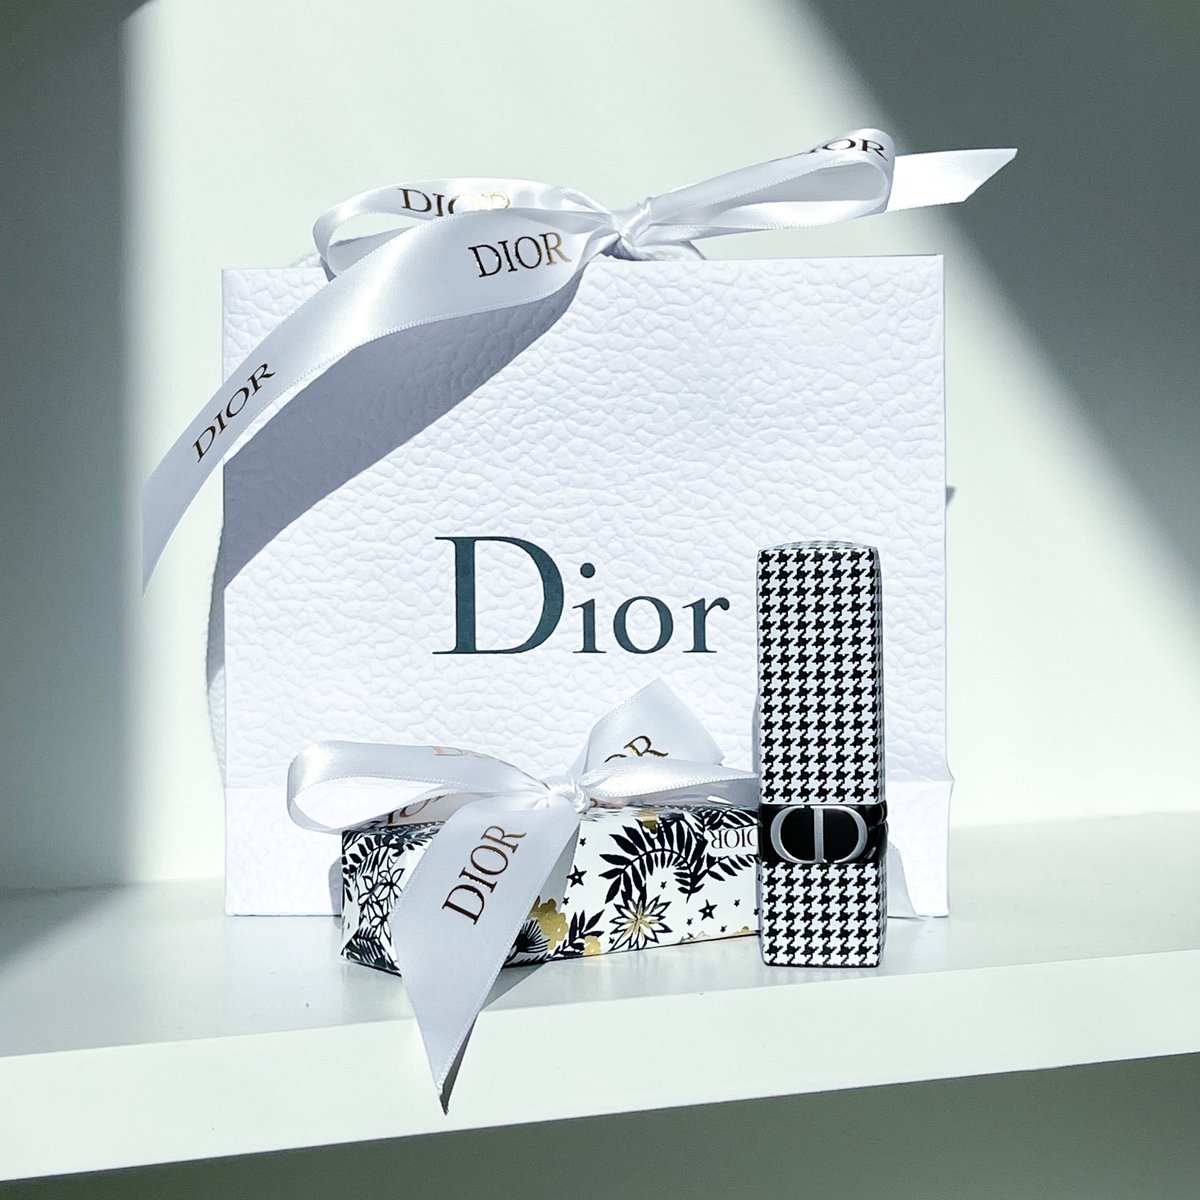 Dior คอลนี้จะบอกว่าของเค้าแรร์มากกก นอกจากสอยของตัวเองมาแล้ว ทางเราสอยมาแจกฟลว.อีกแท่ง น้องสวยมากจริงๆ รี + ฟอล เลยน้า อีก 5 วัน มาประกาศ!